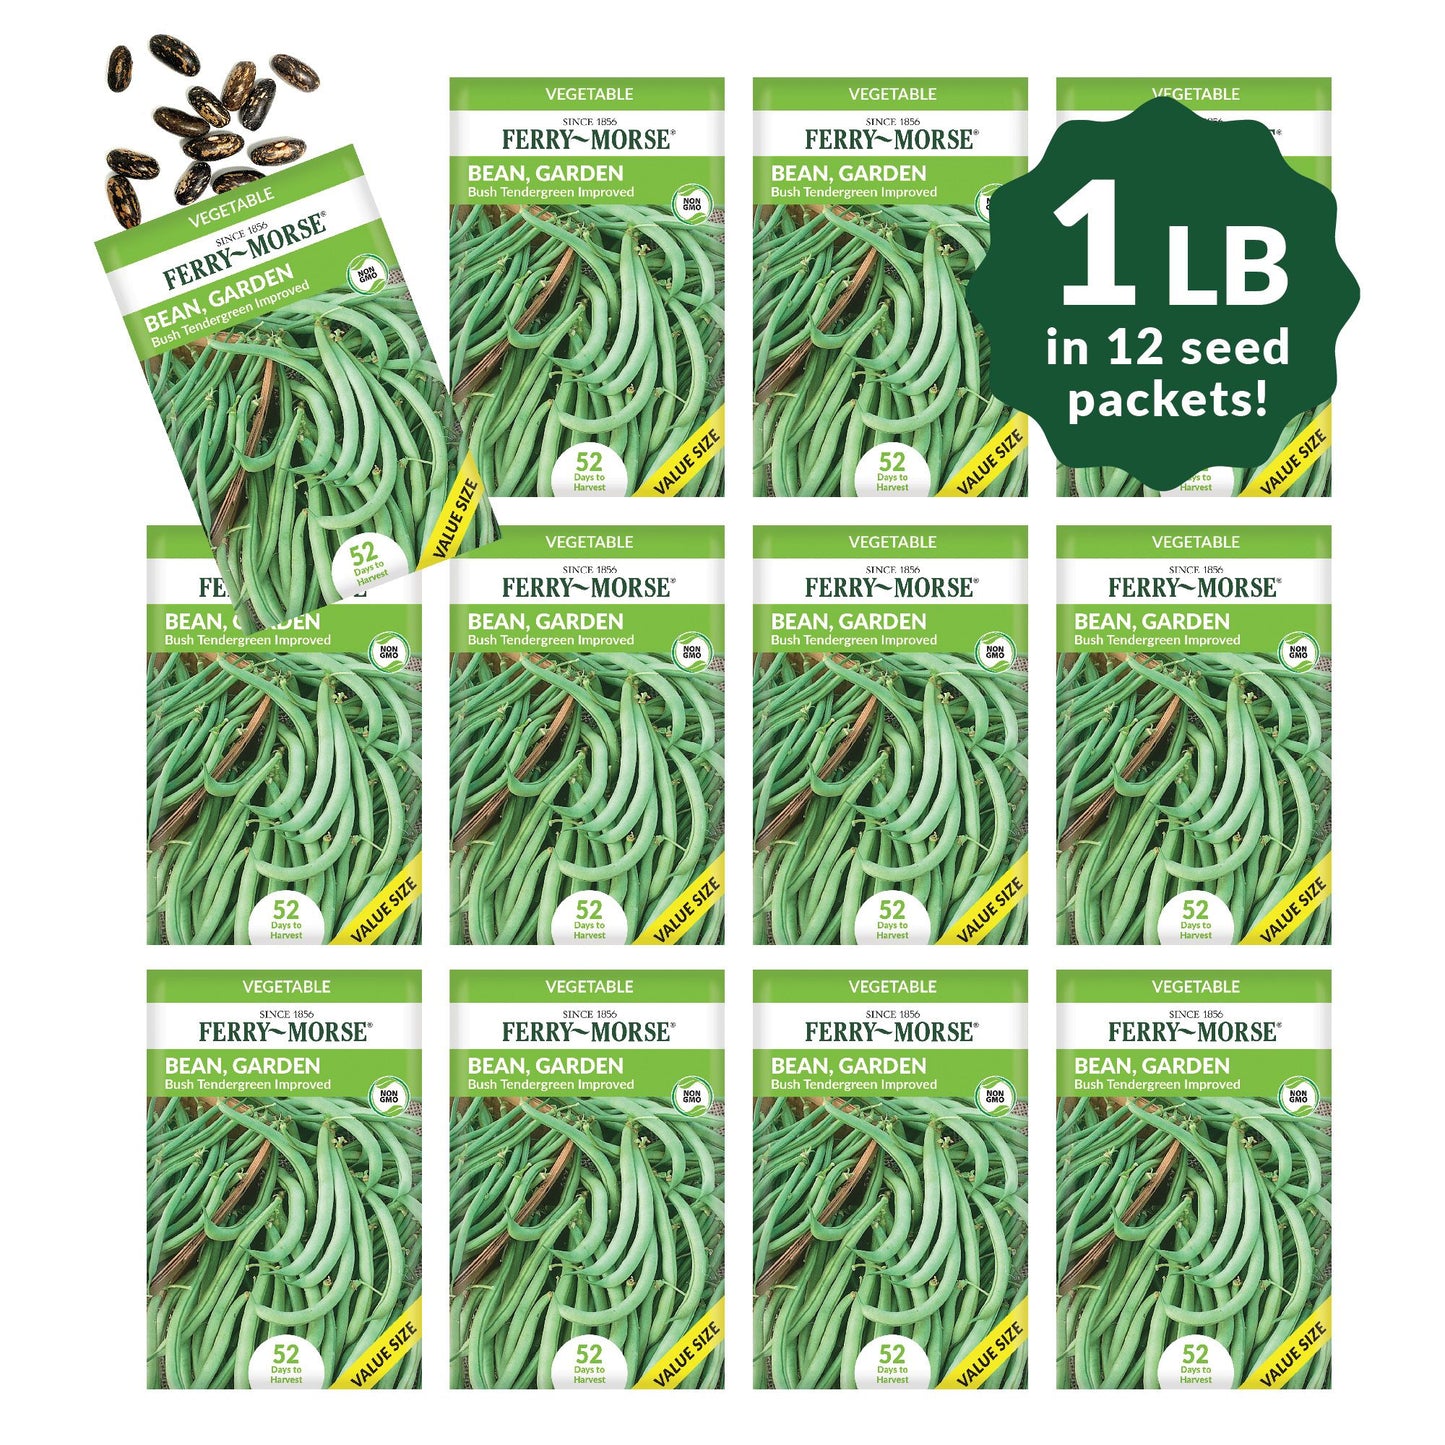 Bean, Bush Tendergreen Improved Economy Seeds